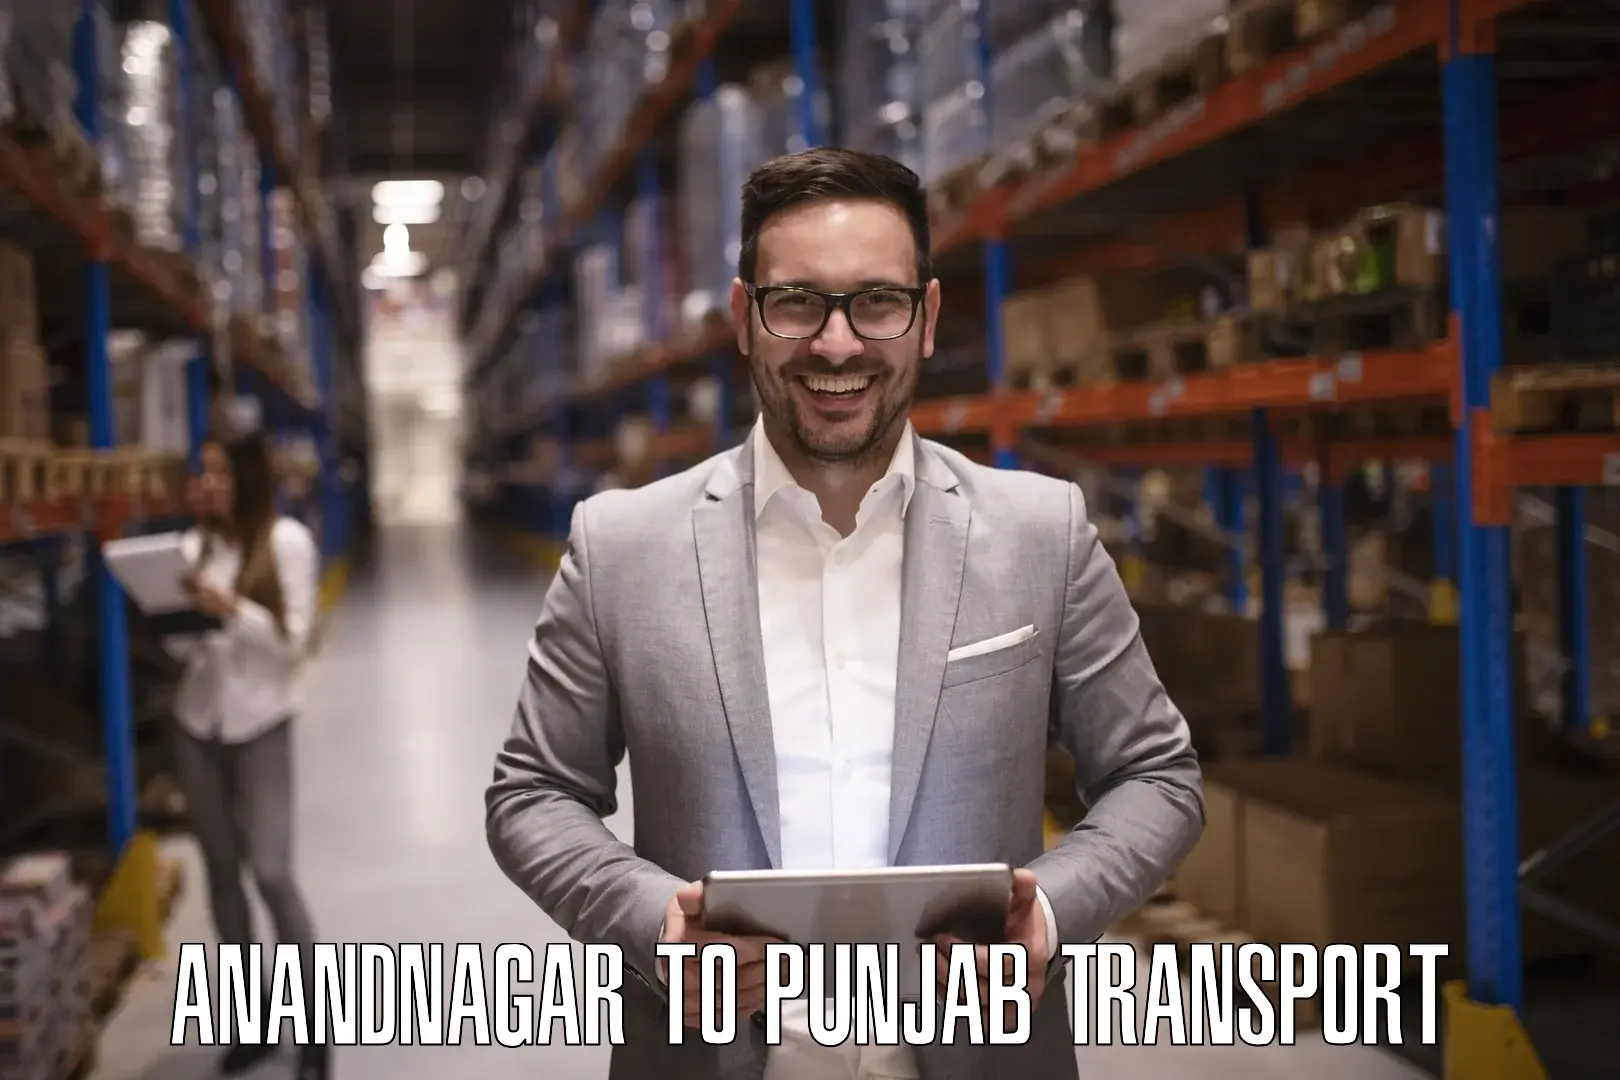 Shipping partner Anandnagar to Amritsar